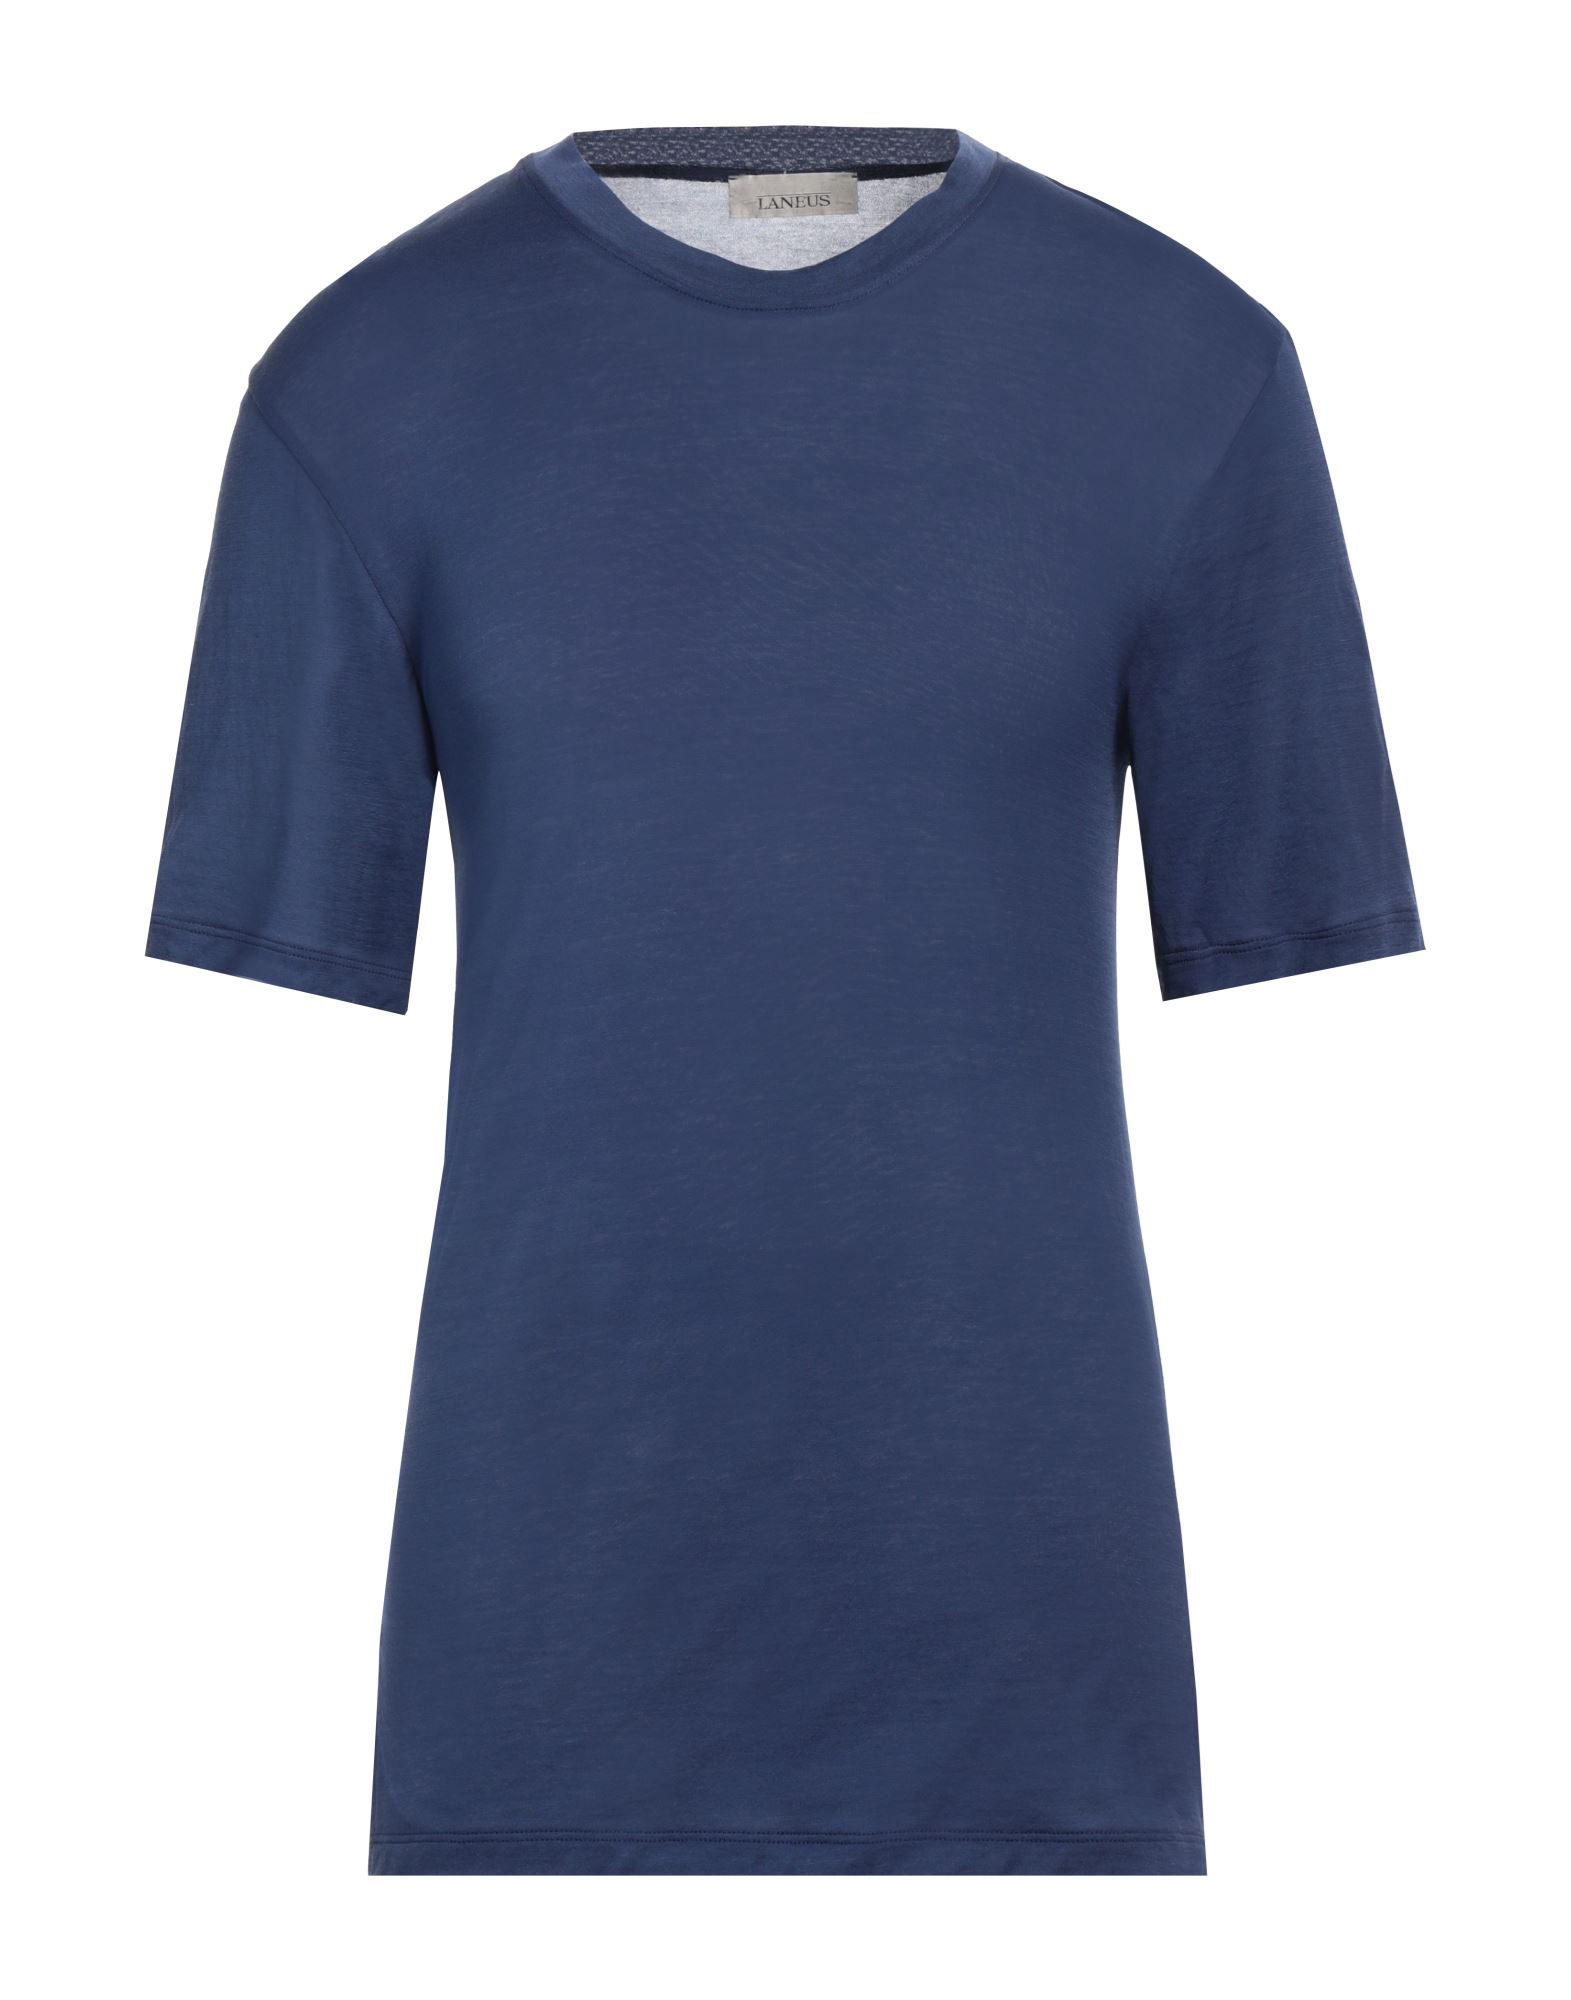 LANEUS T-shirts Herren Blau von LANEUS